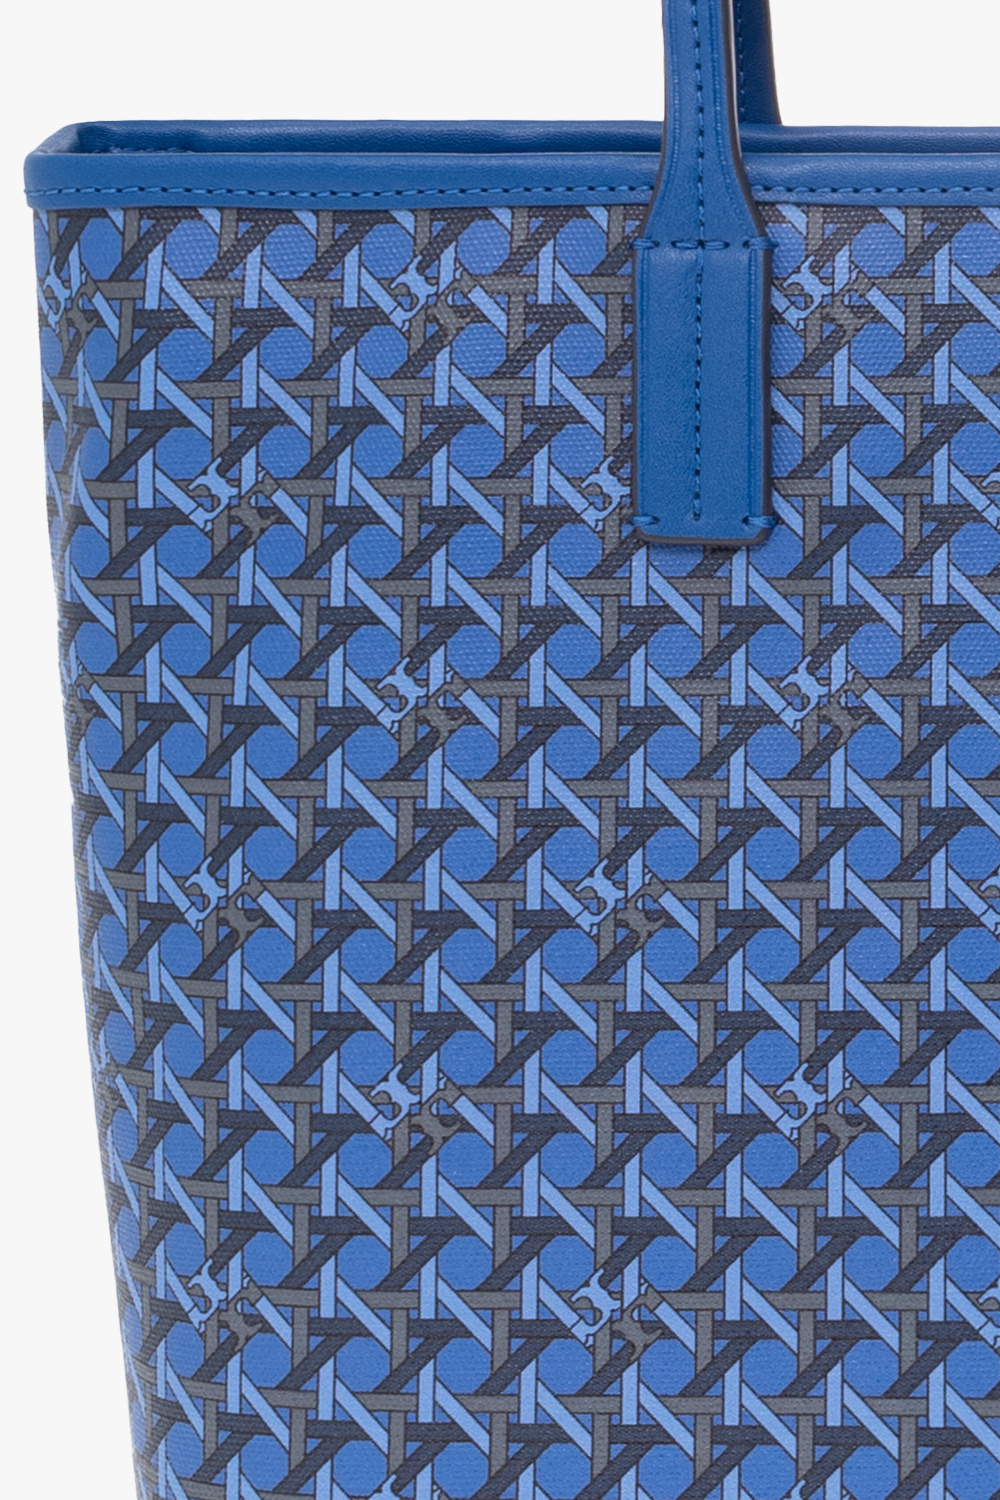 Tory Burch Basketweave-pattern Tote Bag - Farfetch